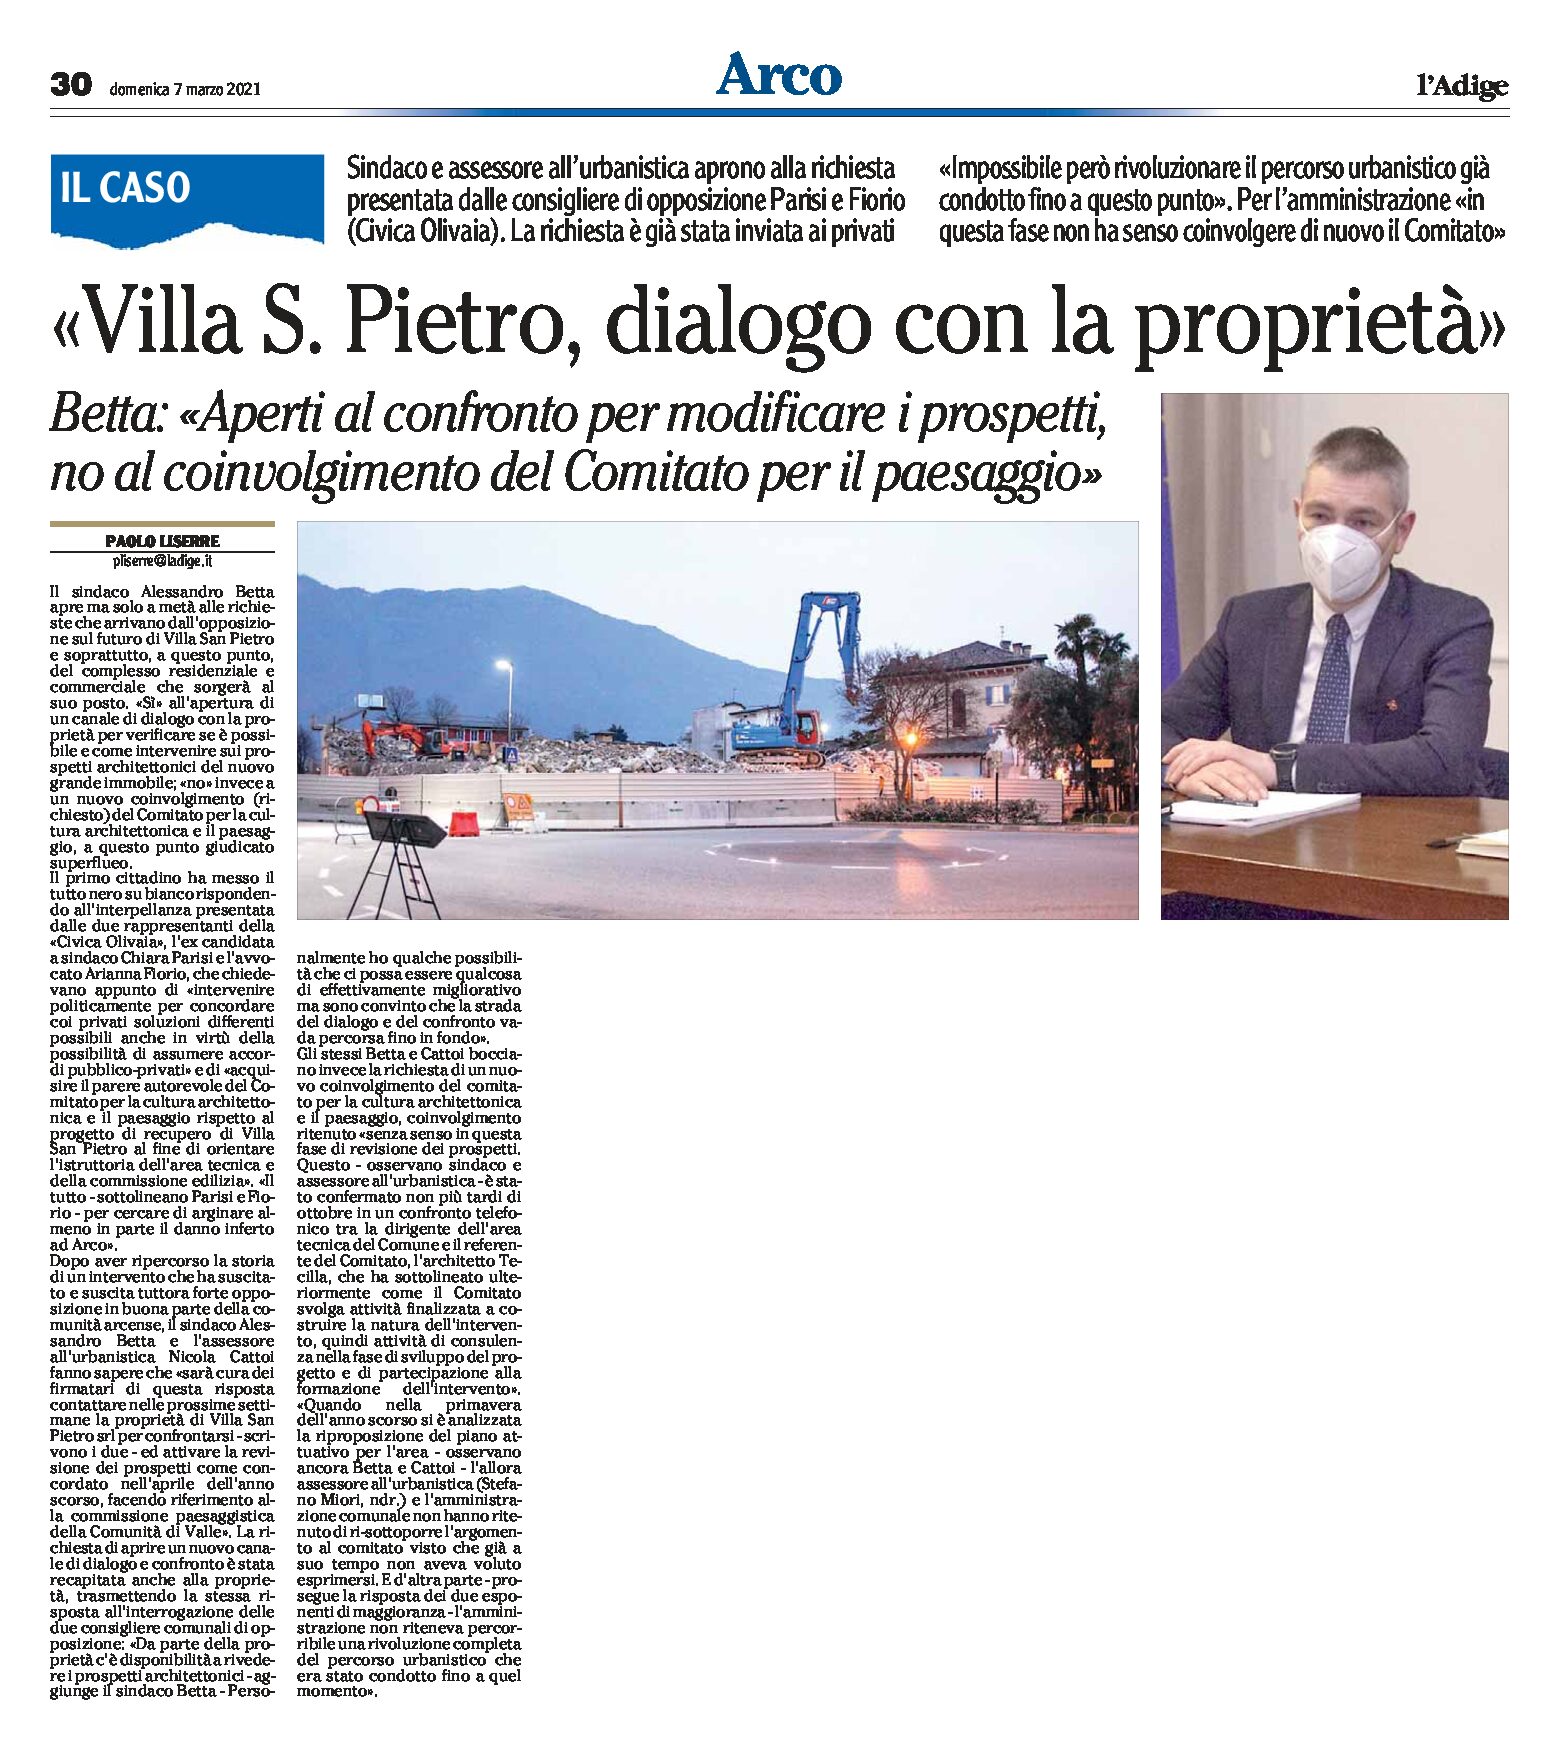 Arco, Villa San Pietro: dialogo con la proprietà